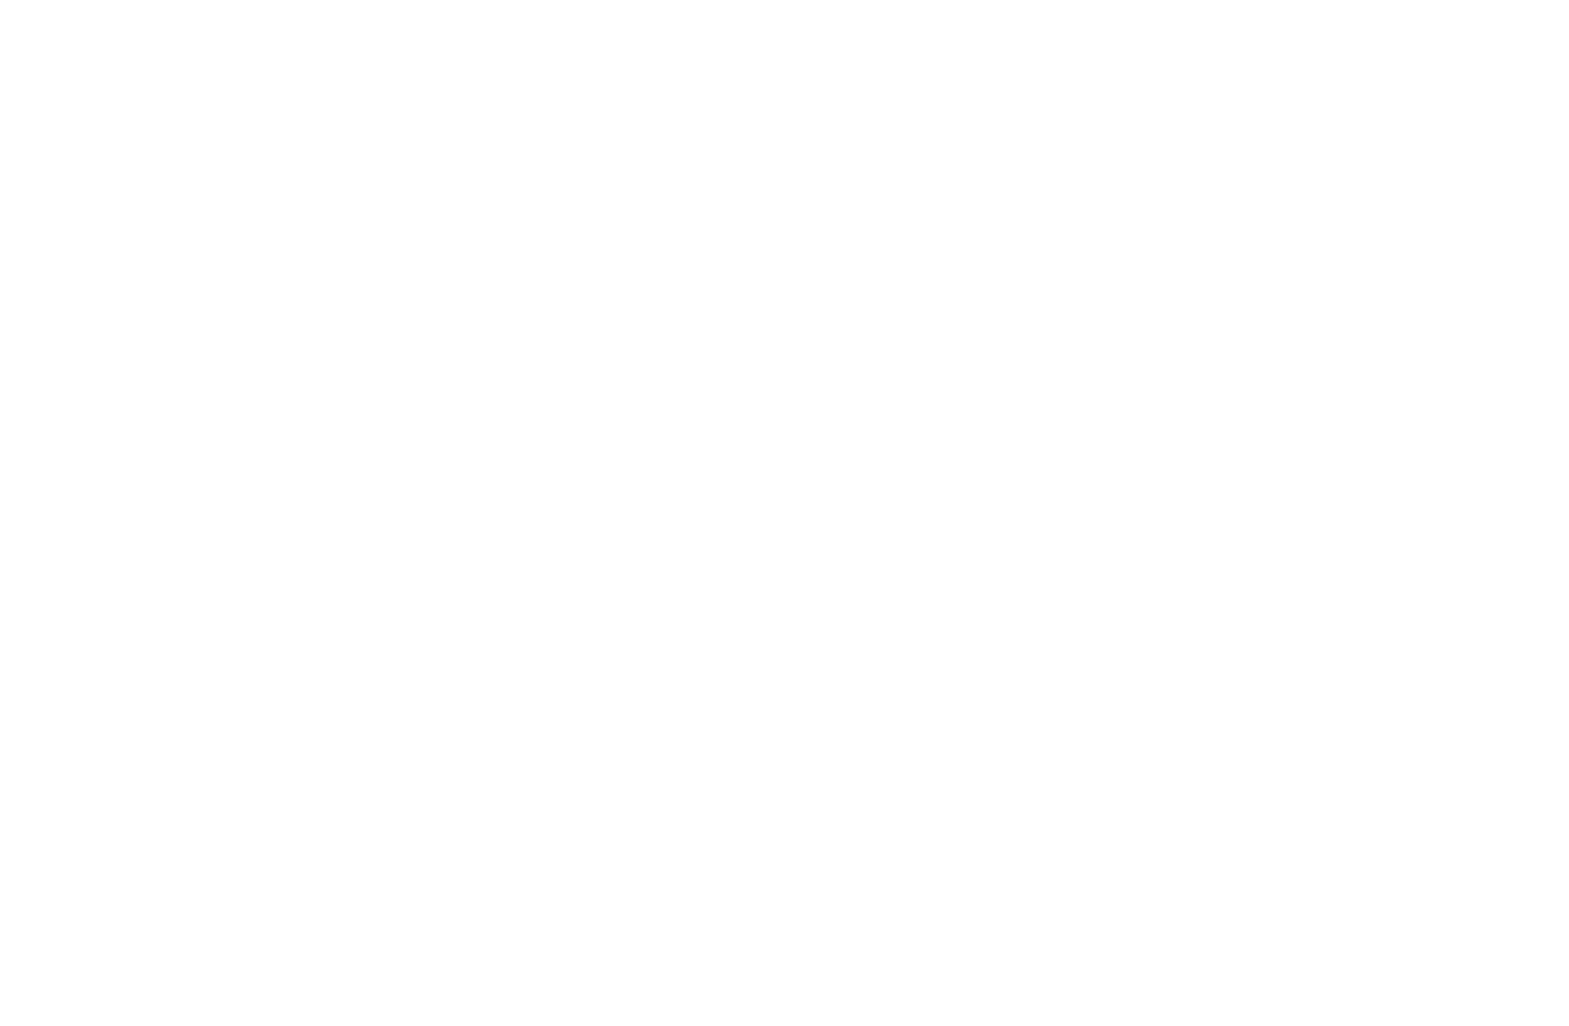 CHI AUTO